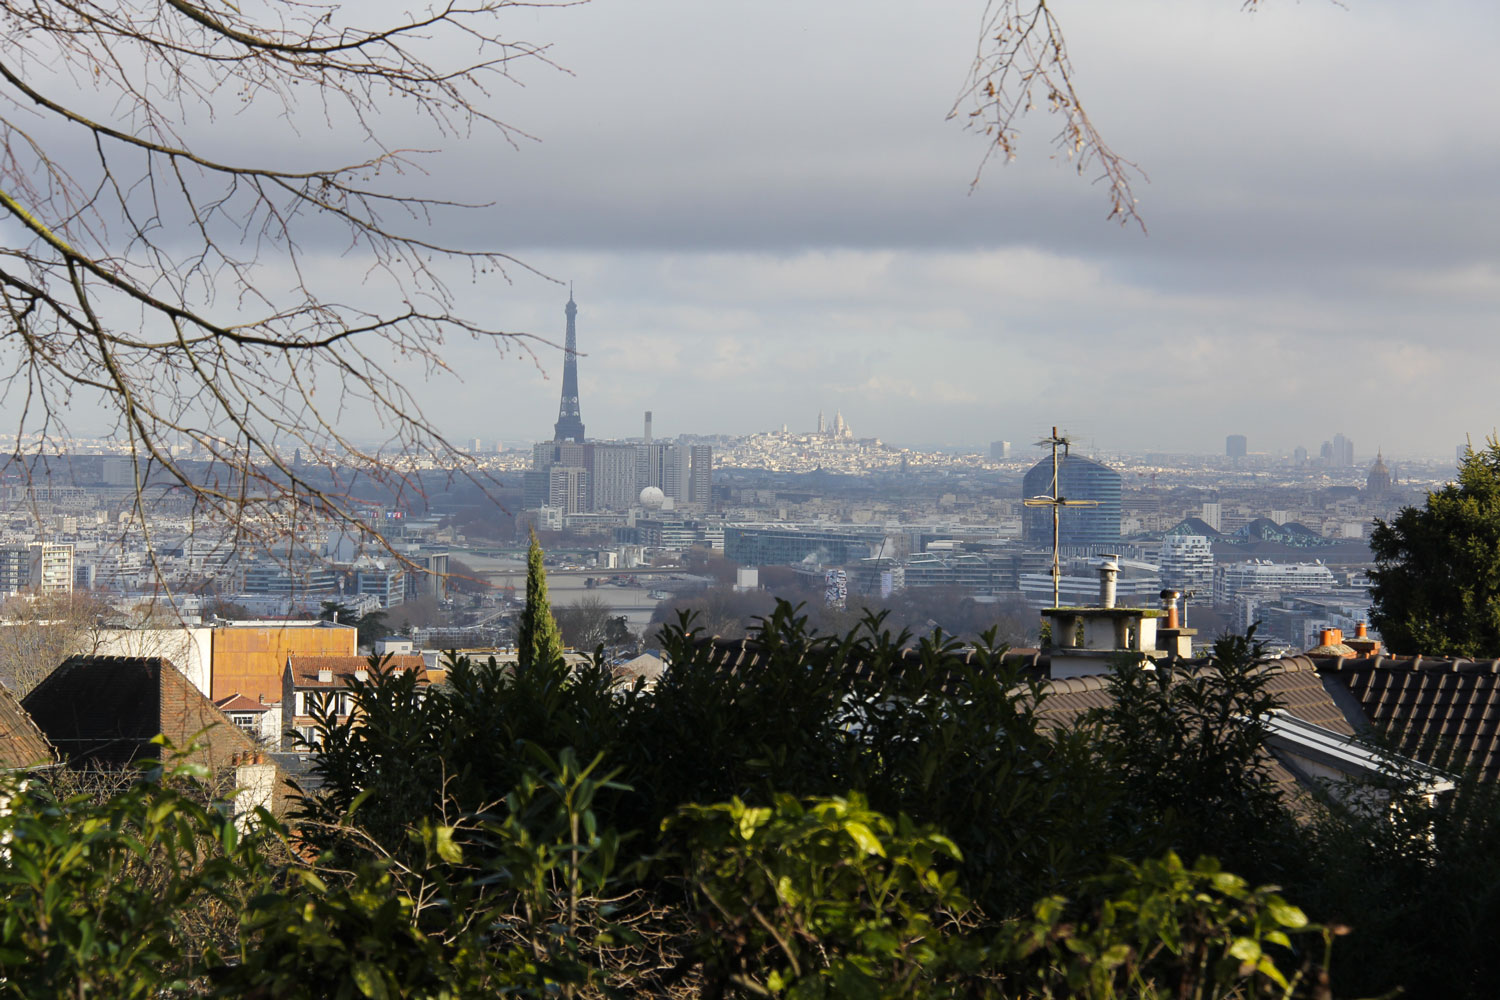 Paris est une cuvette et Meudon, commune limitrophe de la capitale, présente l’avantage d’être sur les hauteurs et donc de faciliter l’observation du ciel © Globe Reporters